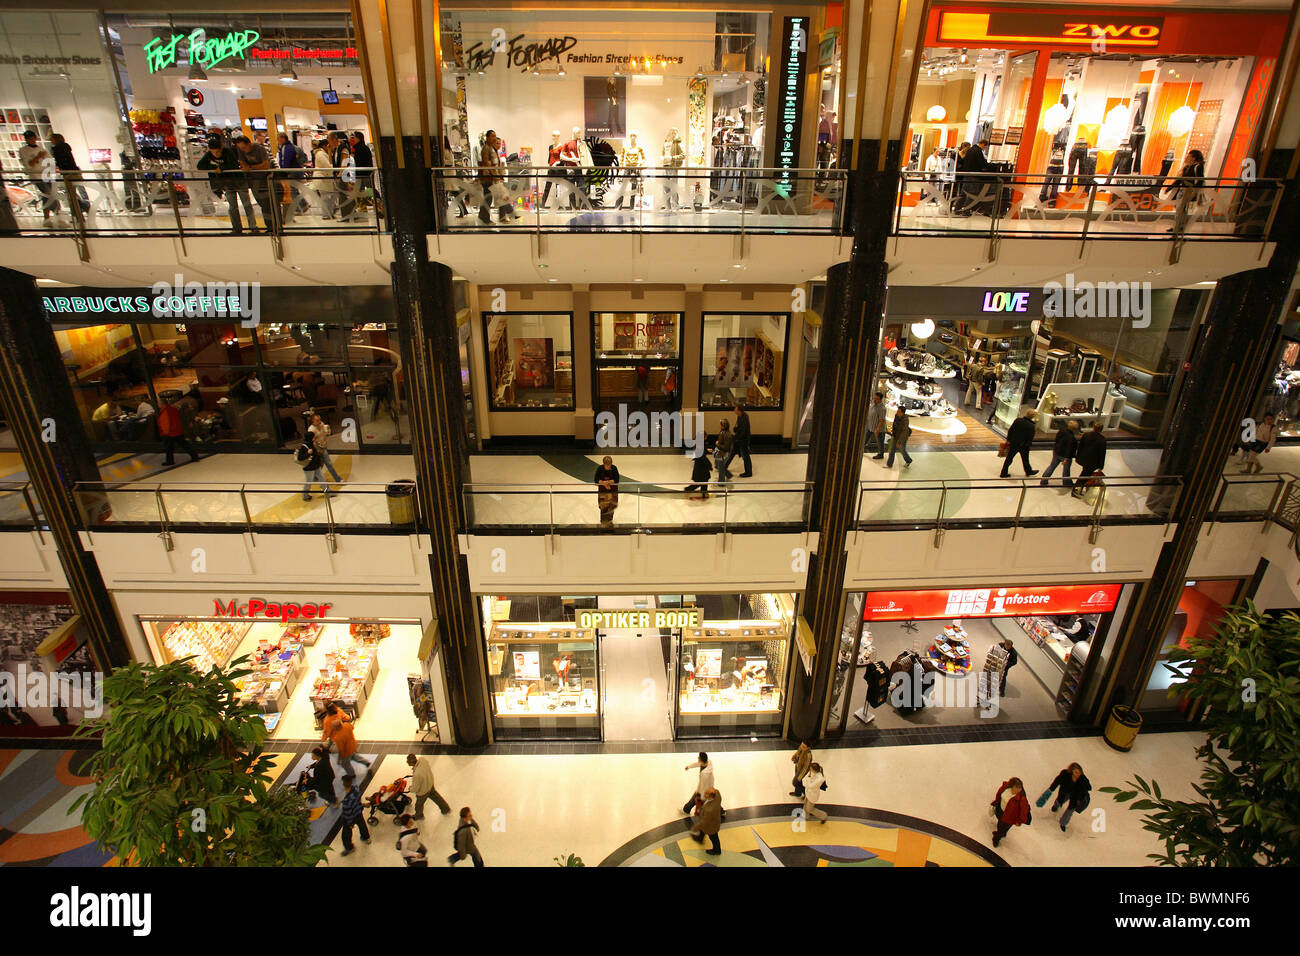 Alexa shopping centre, Berlin, Germany Stock Photo - Alamy